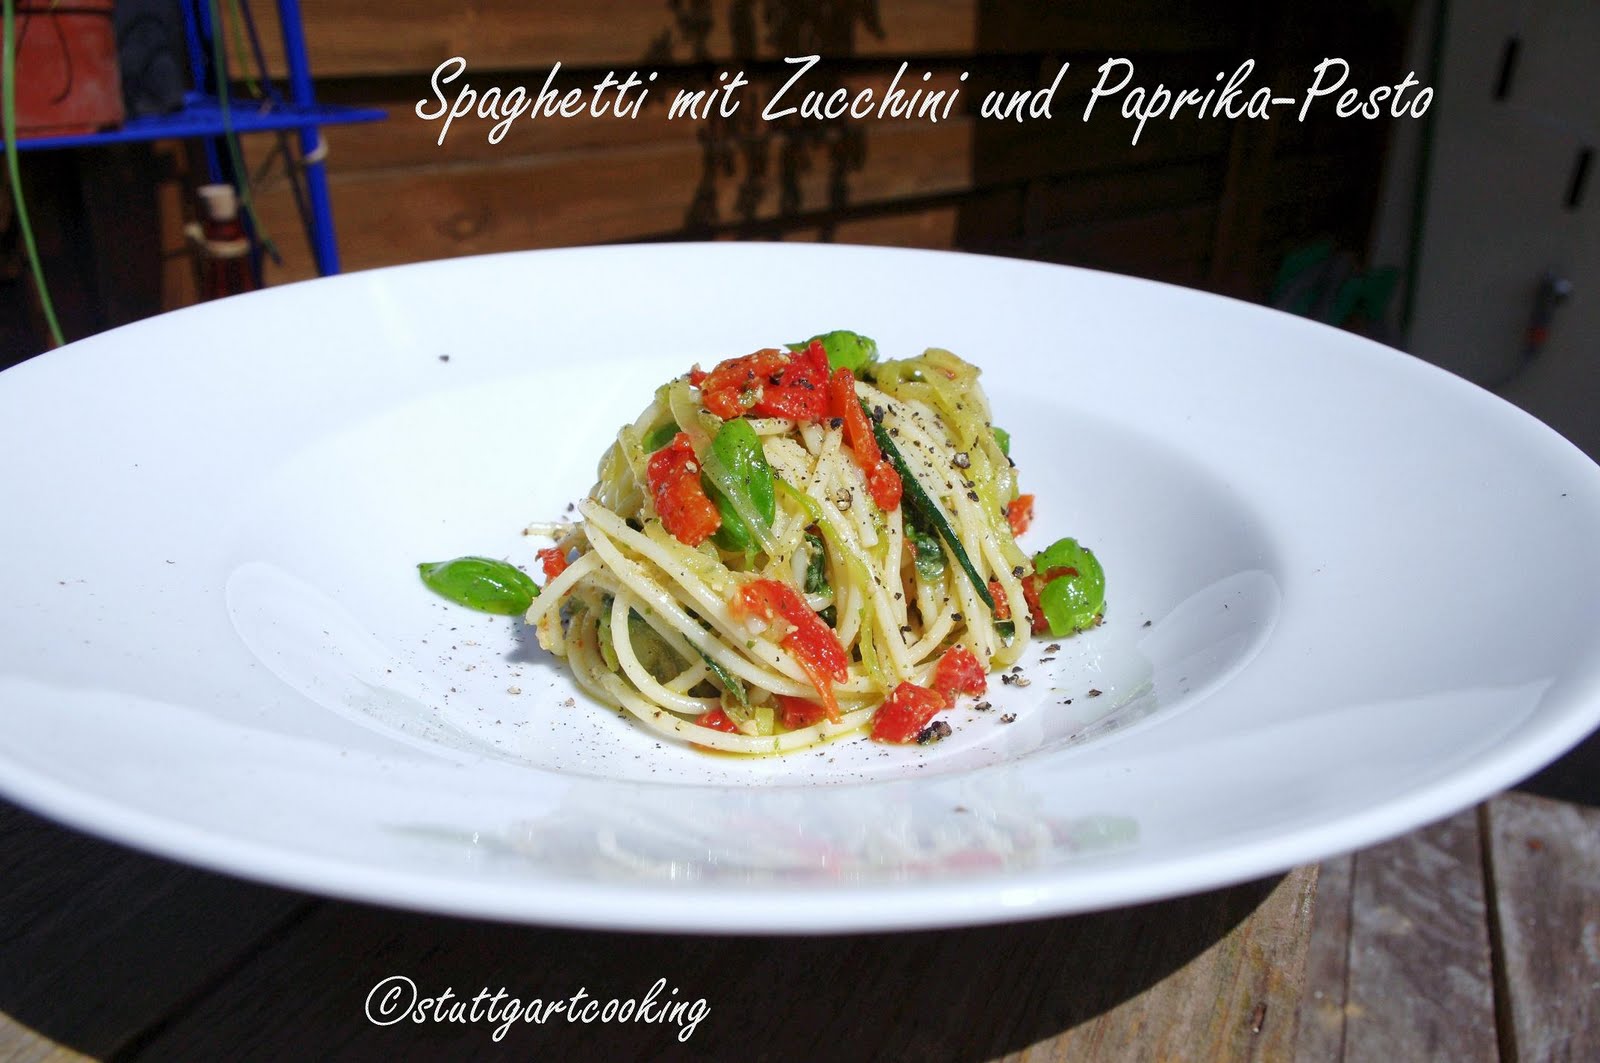 stuttgartcooking: Spaghetti mit Zucchinistreifen und Paprika-Pesto